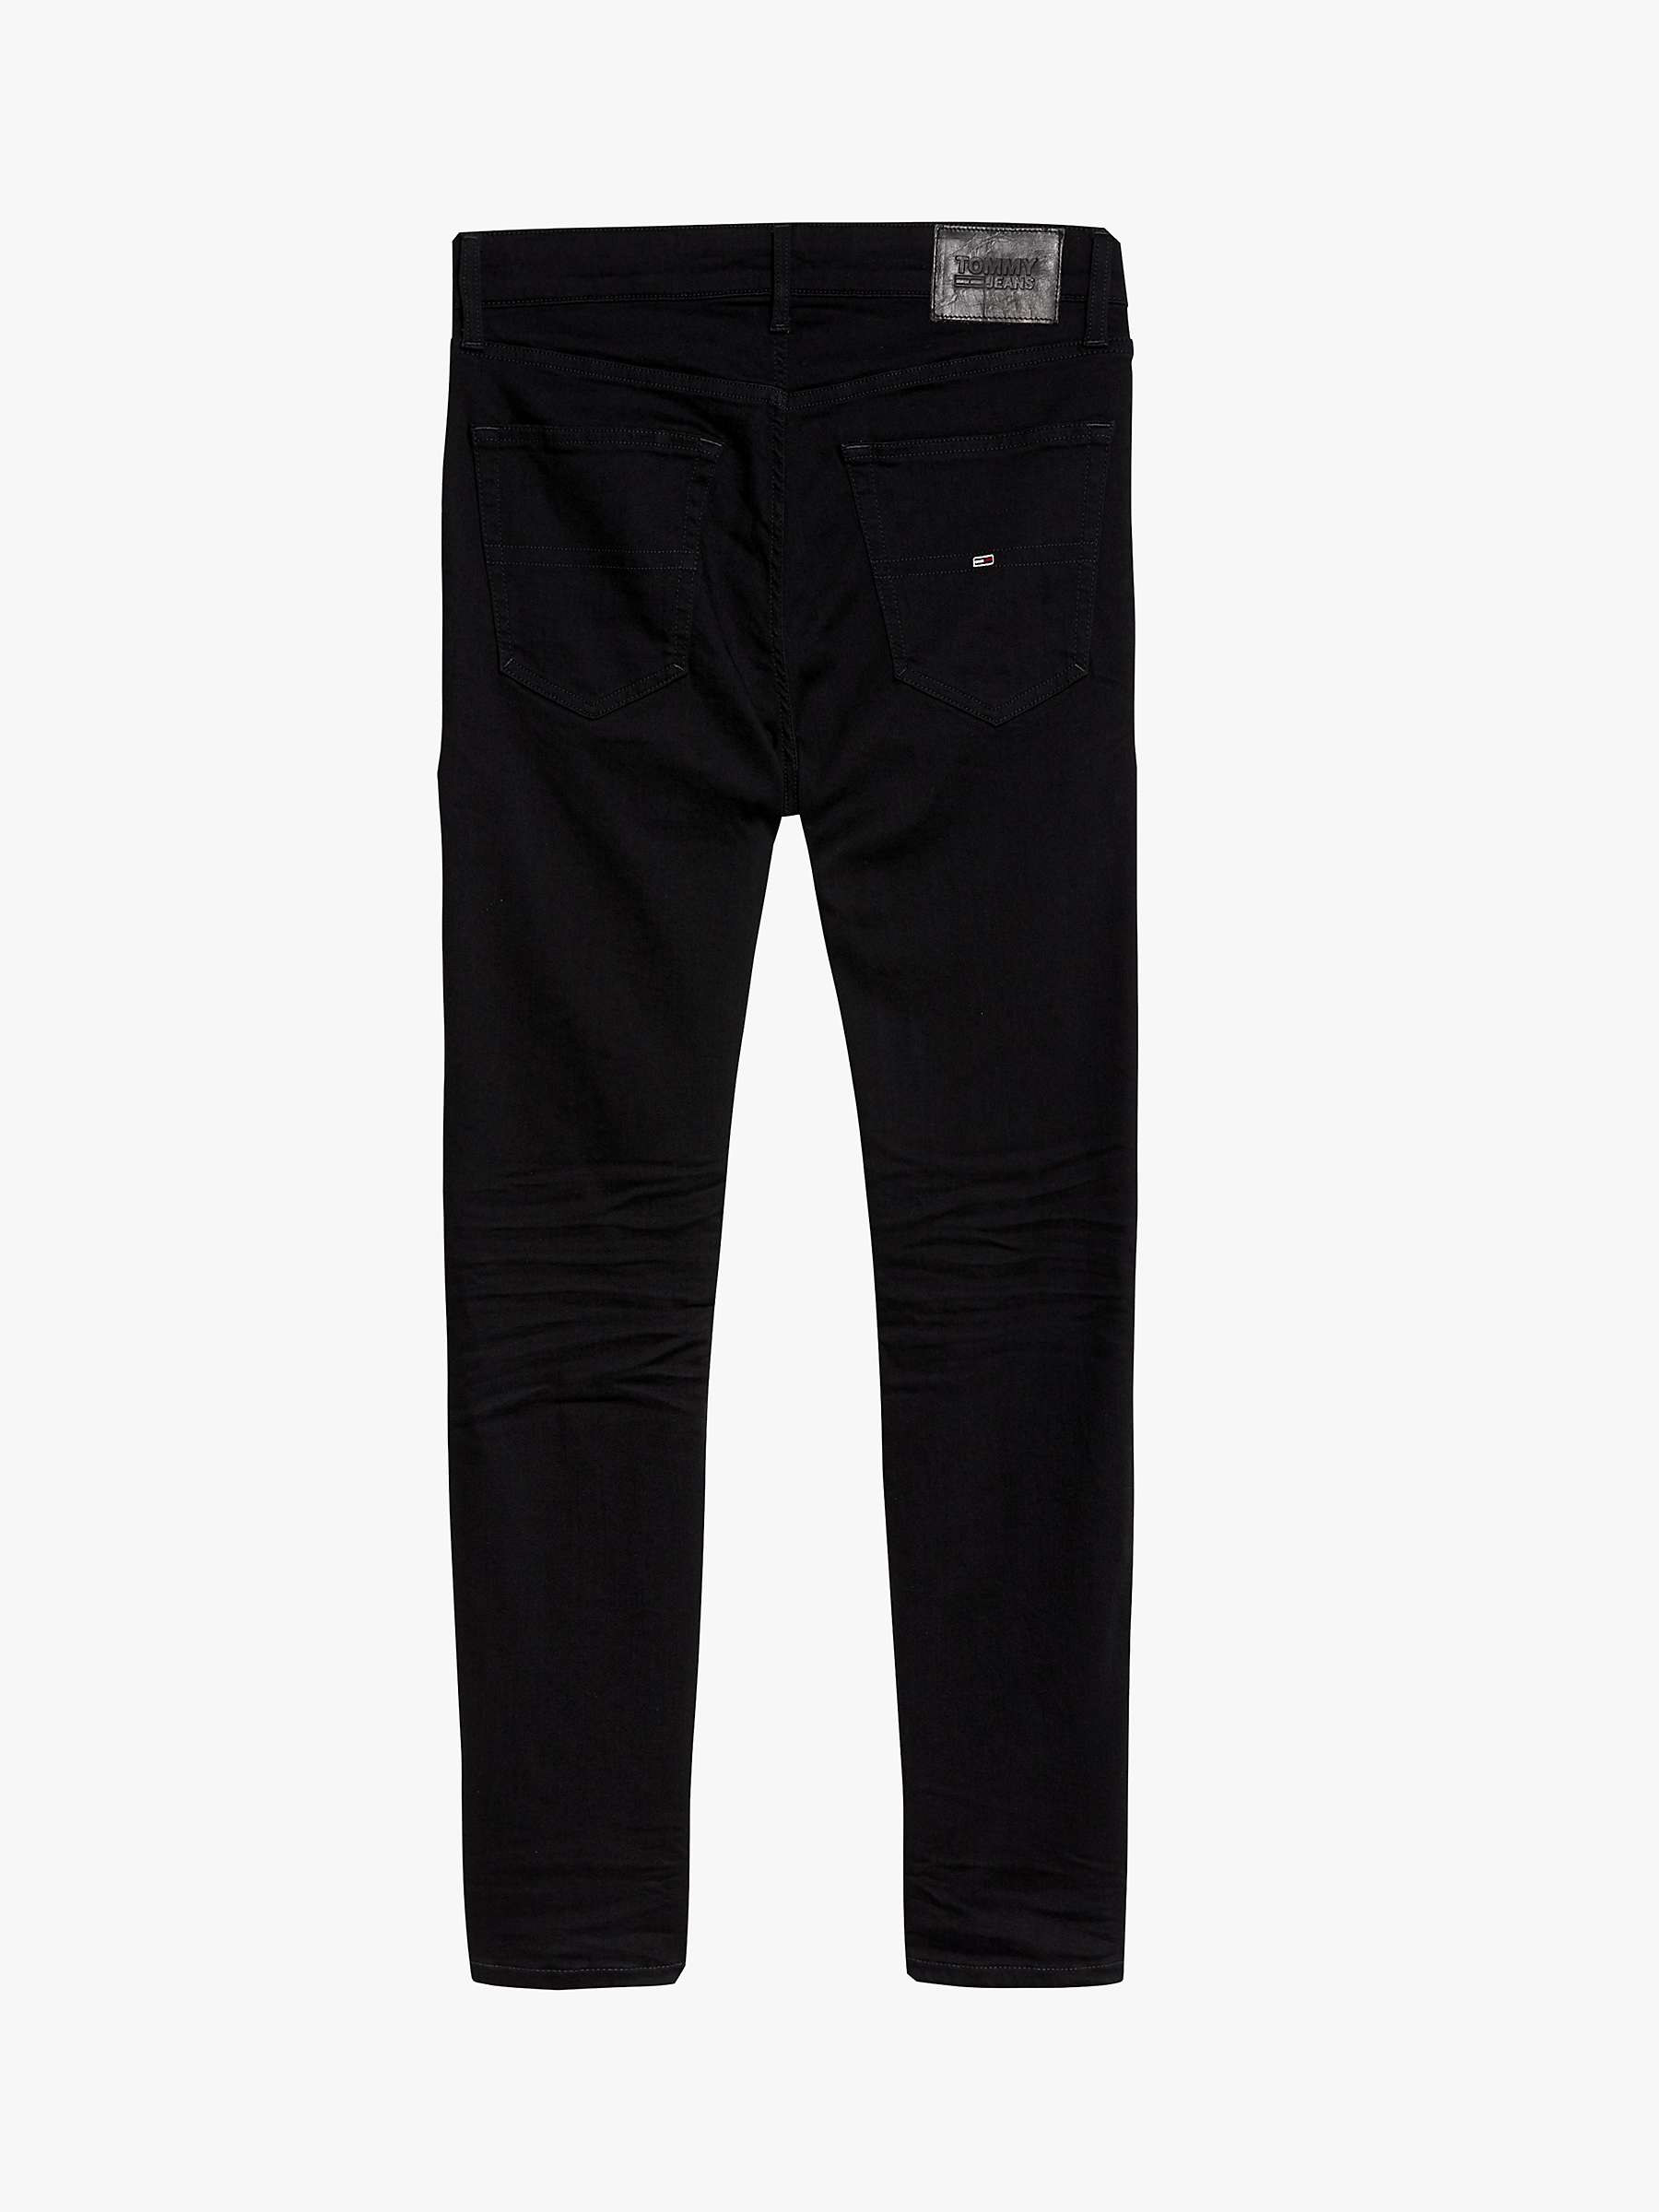 Buy Tommy Jeans Slim Fit Denim Jeans, Black Online at johnlewis.com